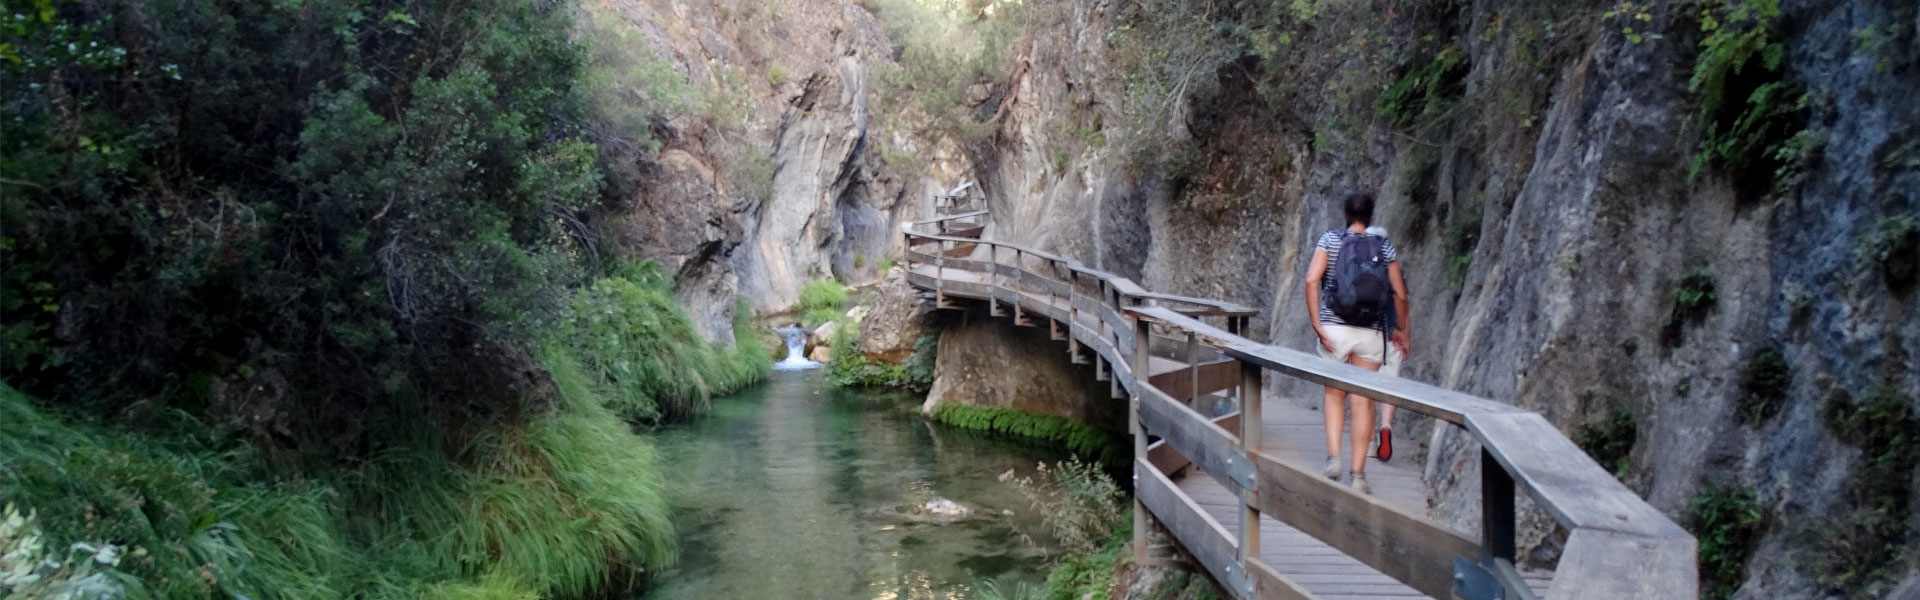 Cerrada de Elías en el río Borosa. Parque Natural de Cazorla, Segura y las Villas